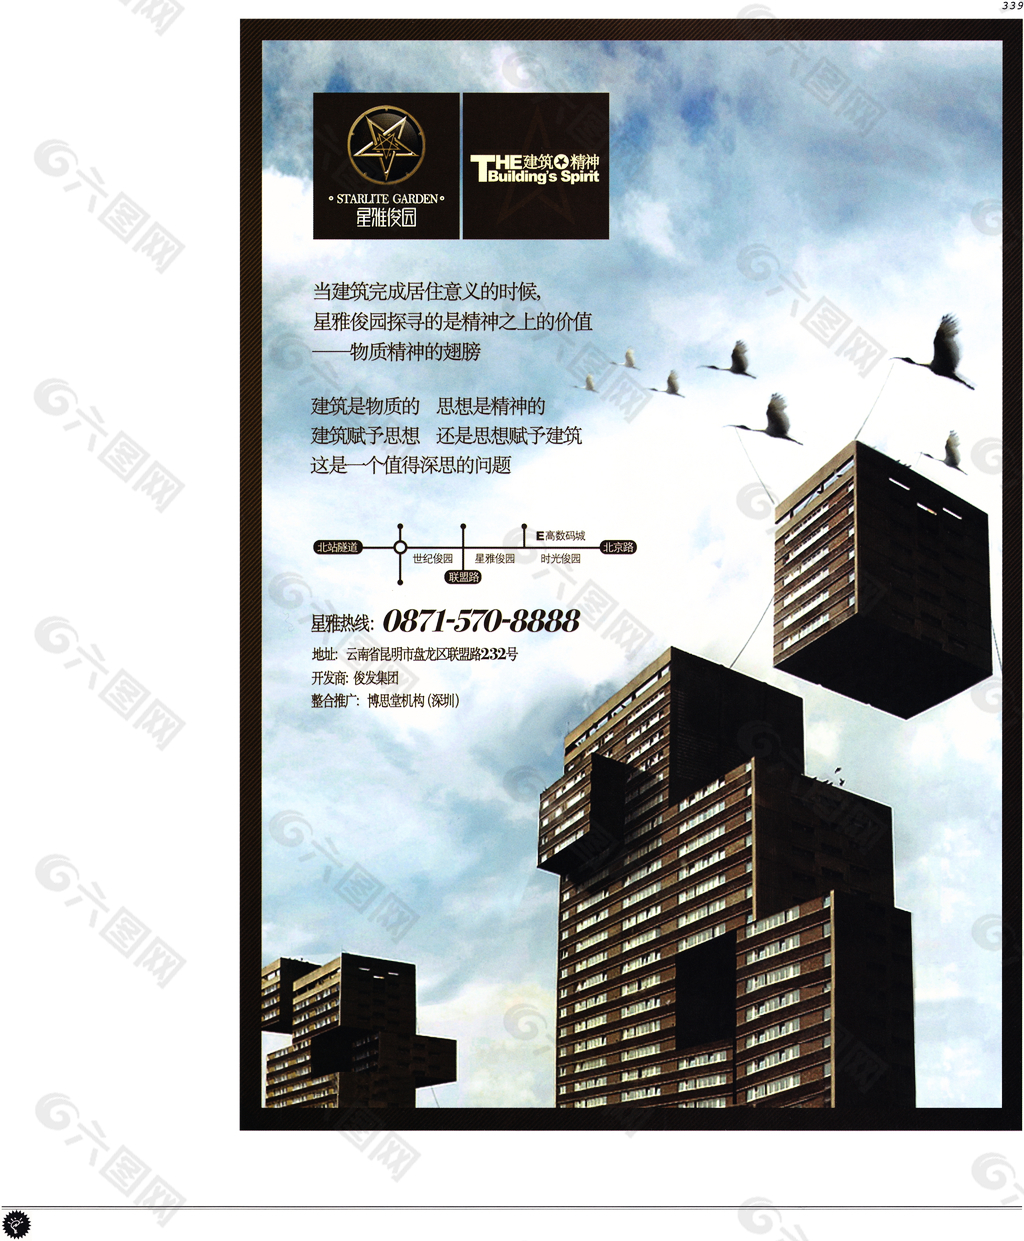 中国房地产广告年鉴 第二册 创意设计_0321